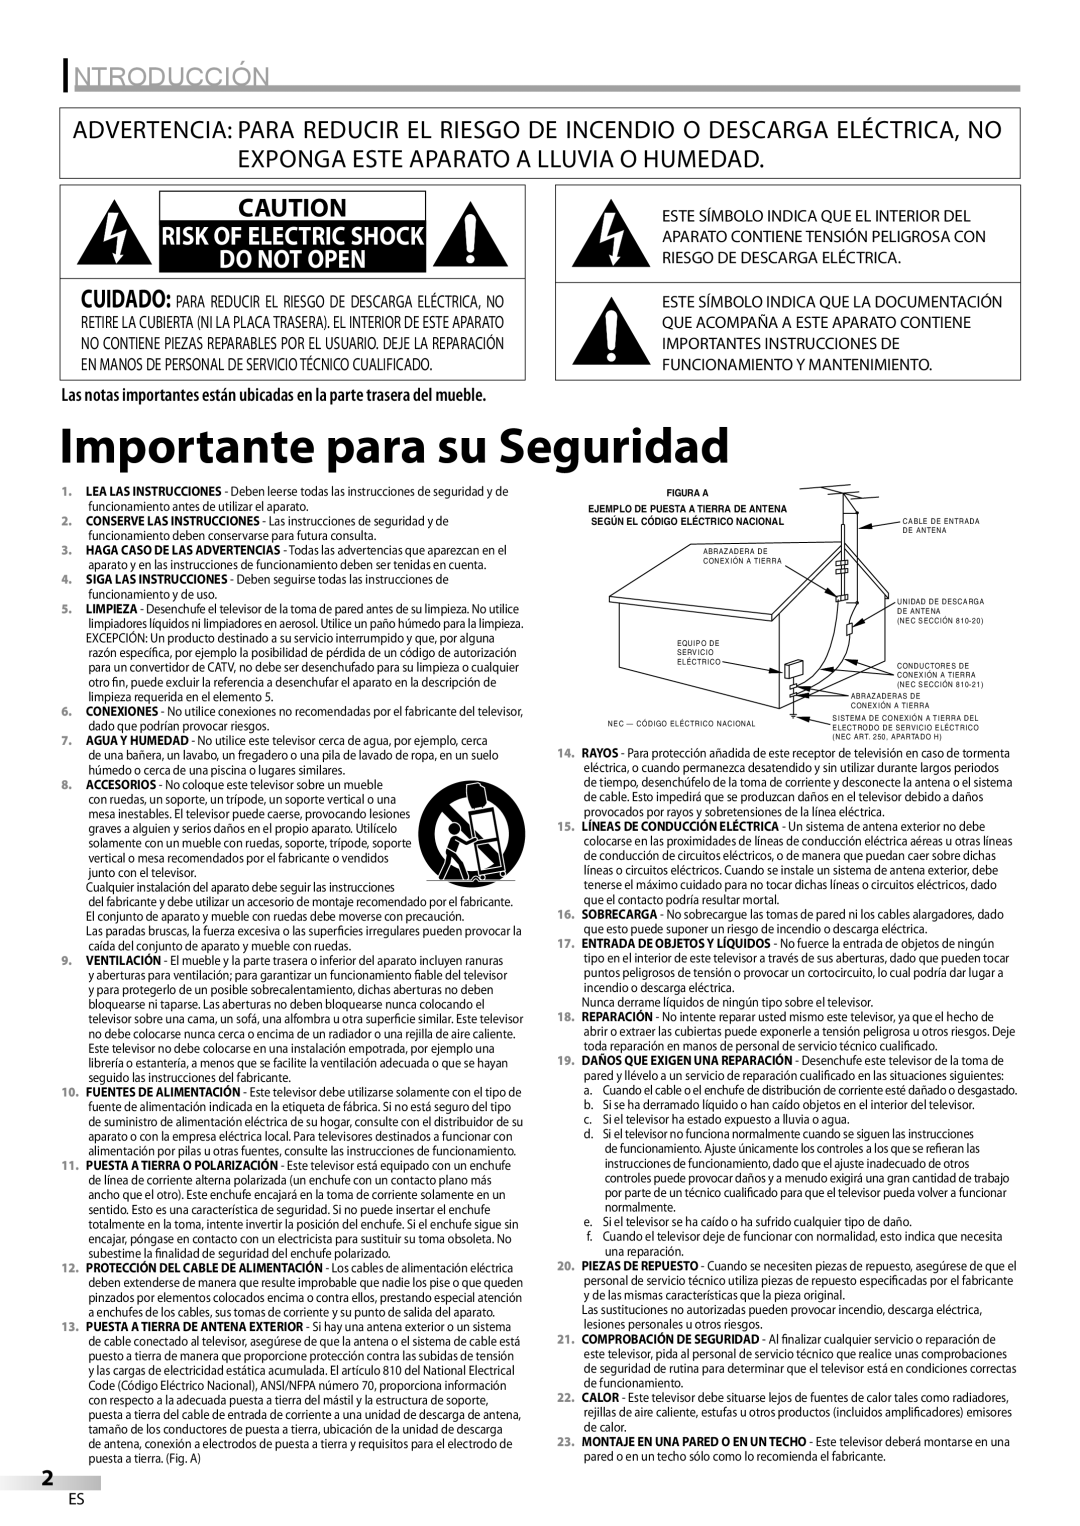 Sylvania LD200SL8 Importante para su Seguridad, Introducción, Risk Of Electric Shock Do Not Open, funcionamiento y de uso 